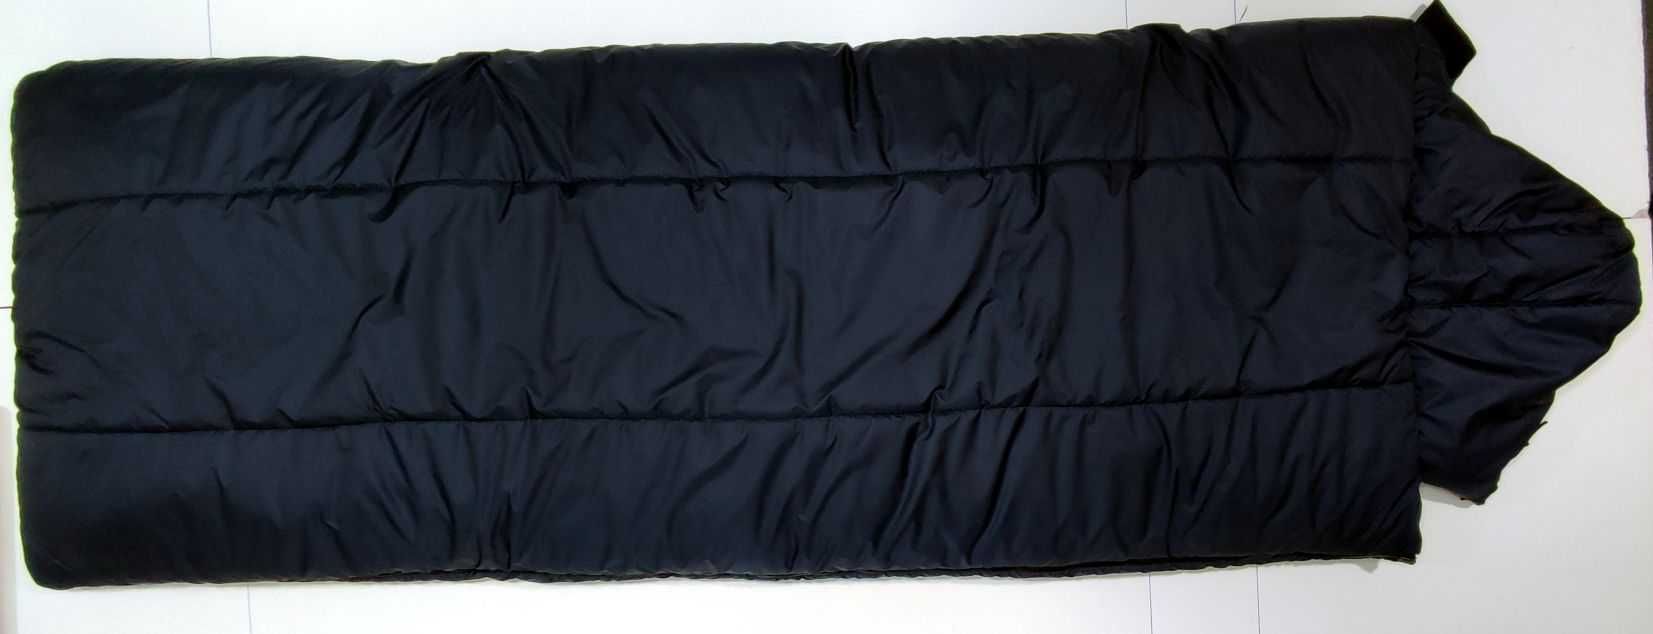 Теплый спальный мешок-одеяло